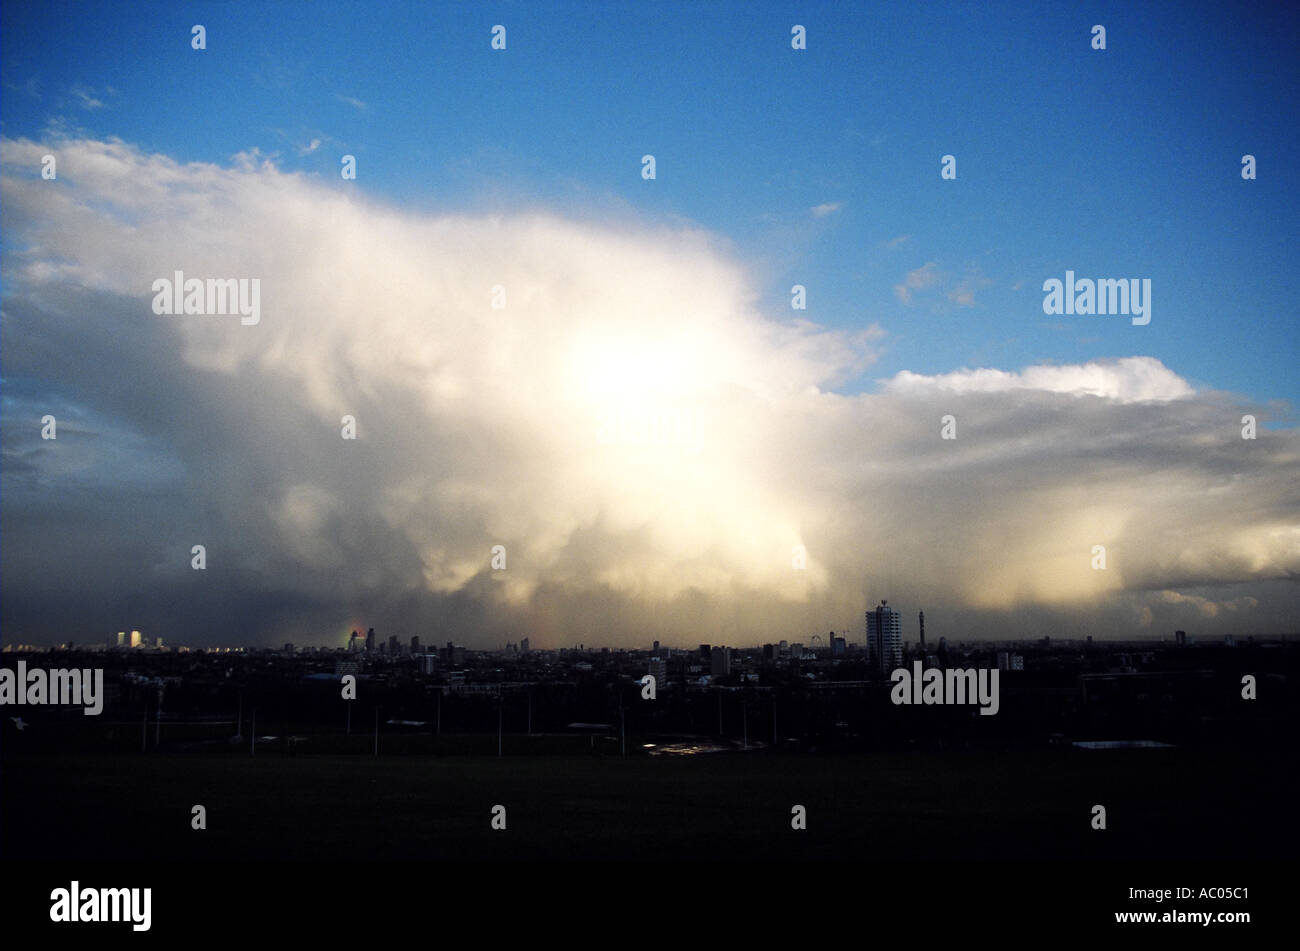 Storm cloud clearing pour révéler ciel bleu profond et vue sur Londres Angleterre Grande-bretagne Royaume-Uni UK Banque D'Images